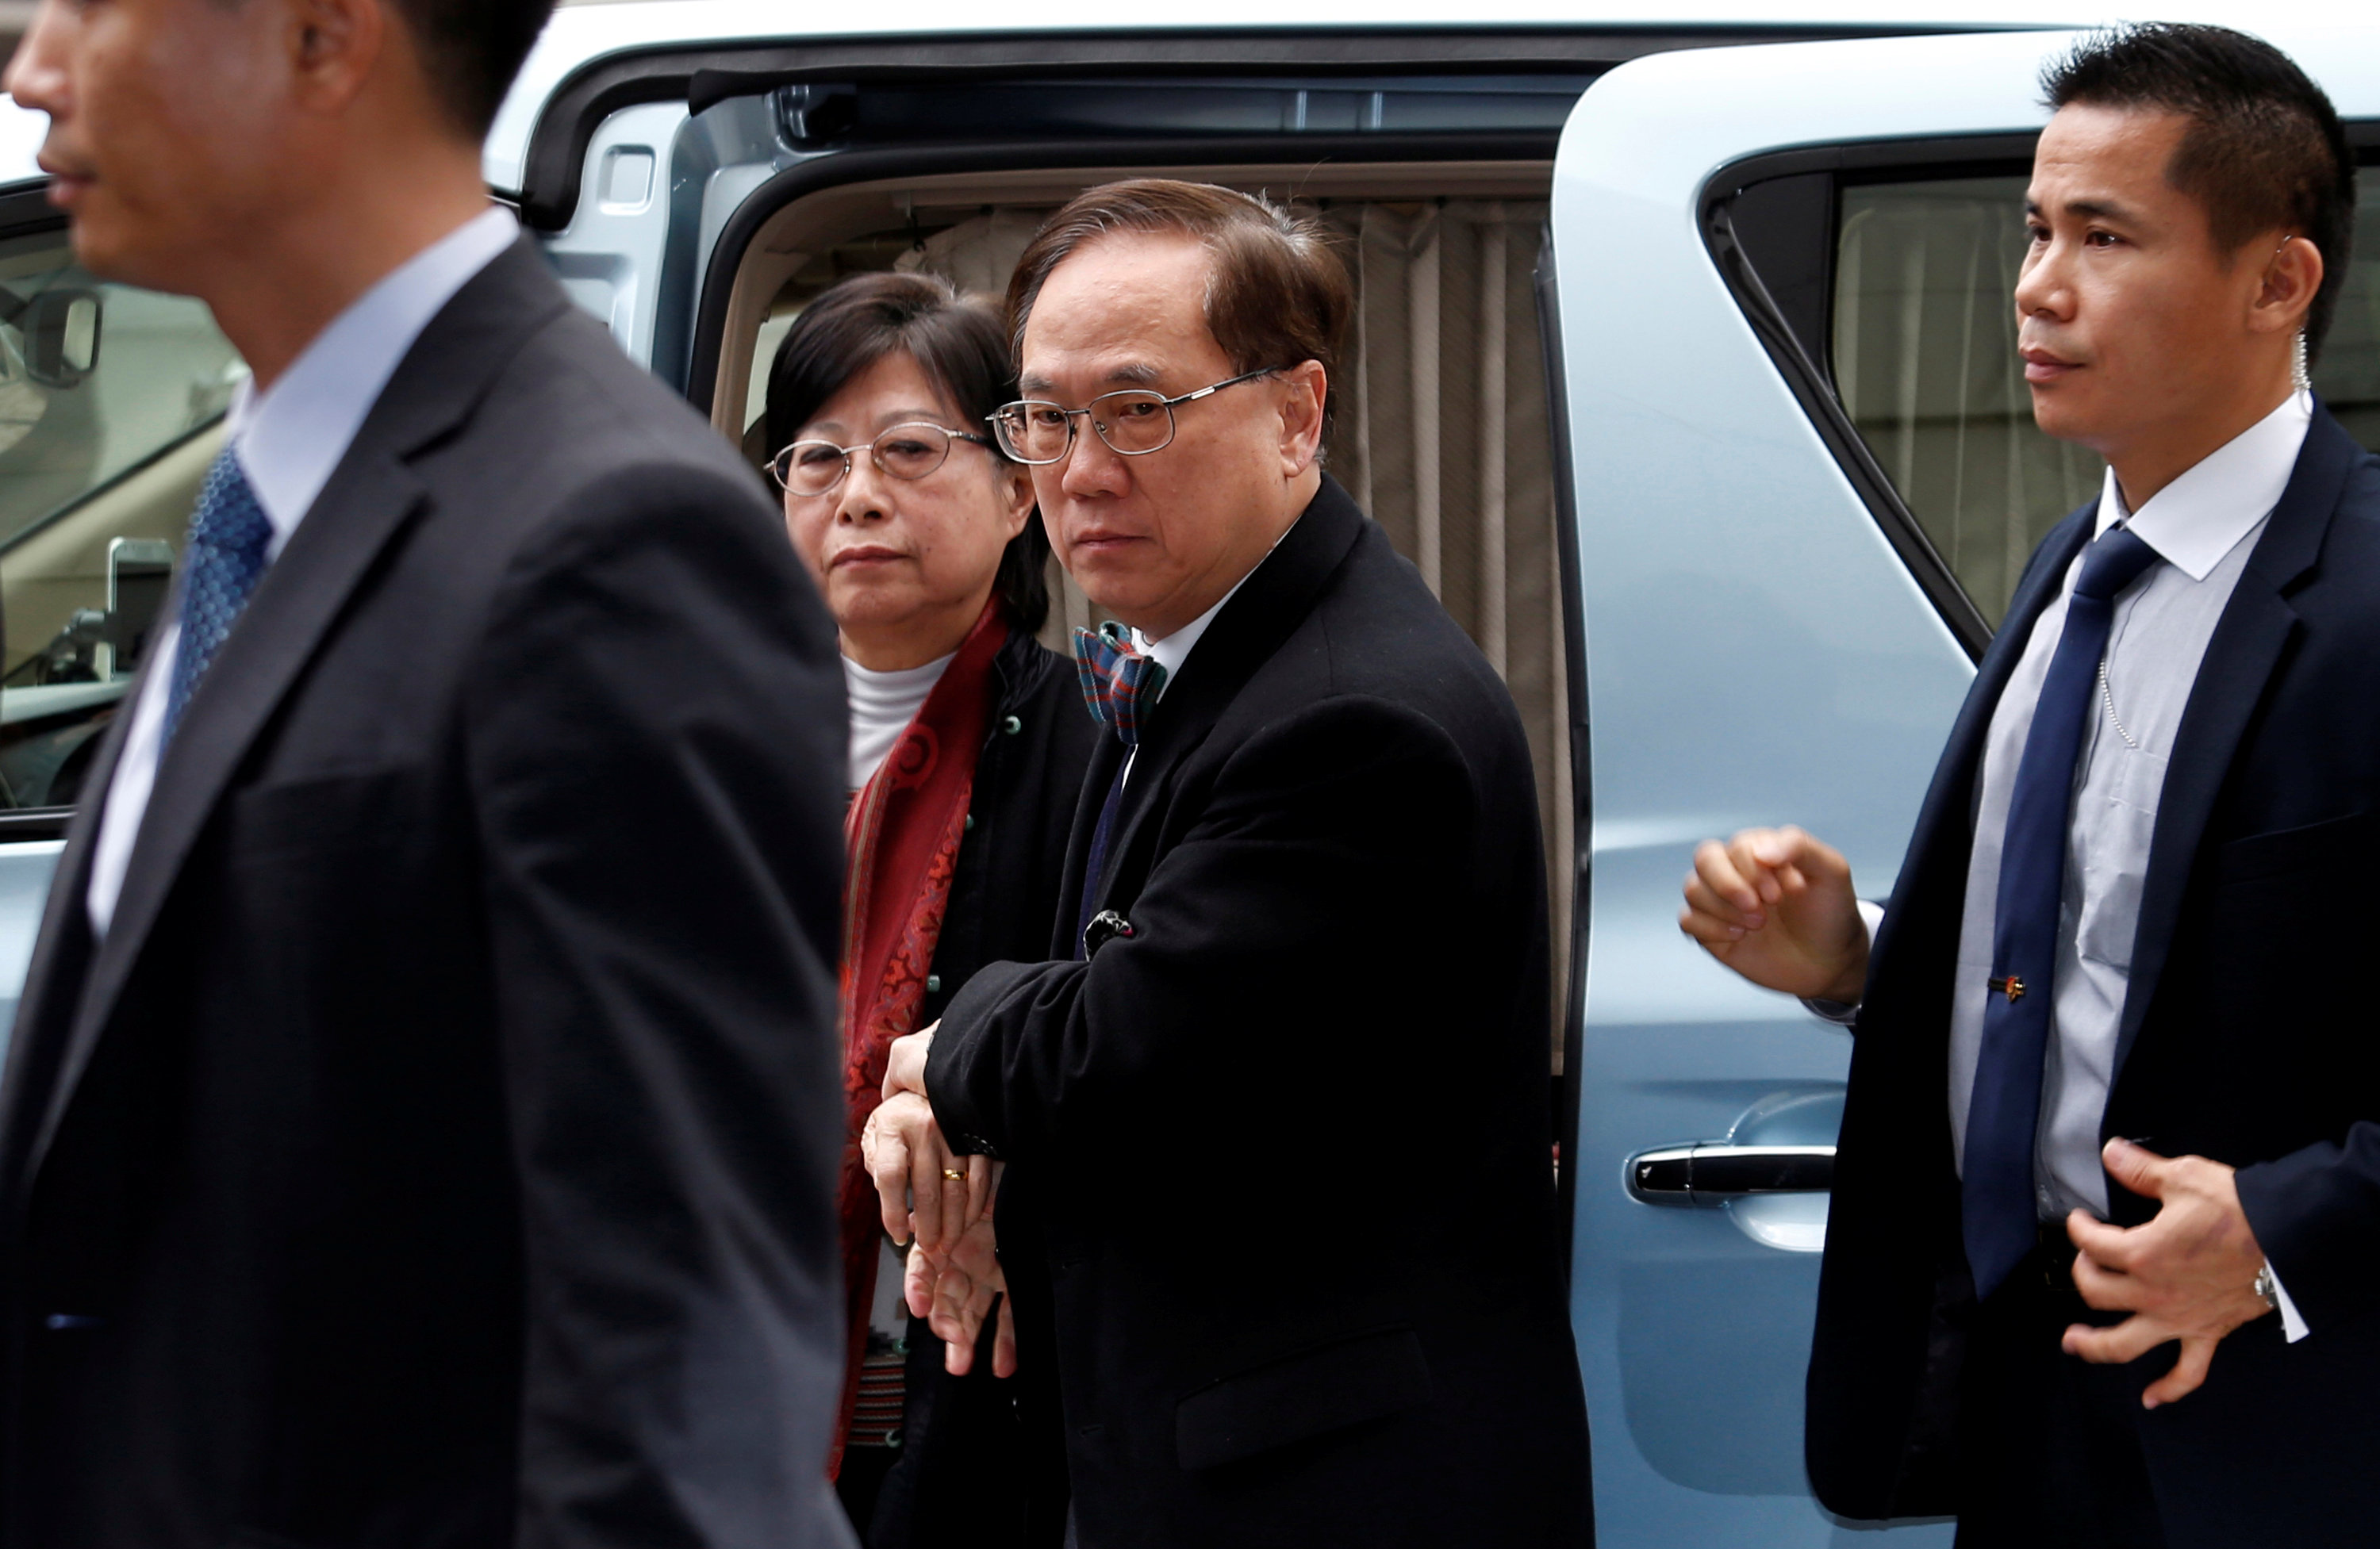 دونالد تسانج يصل إلى المحكمة العليا فى هونج كونج لاستئناف محاكمته